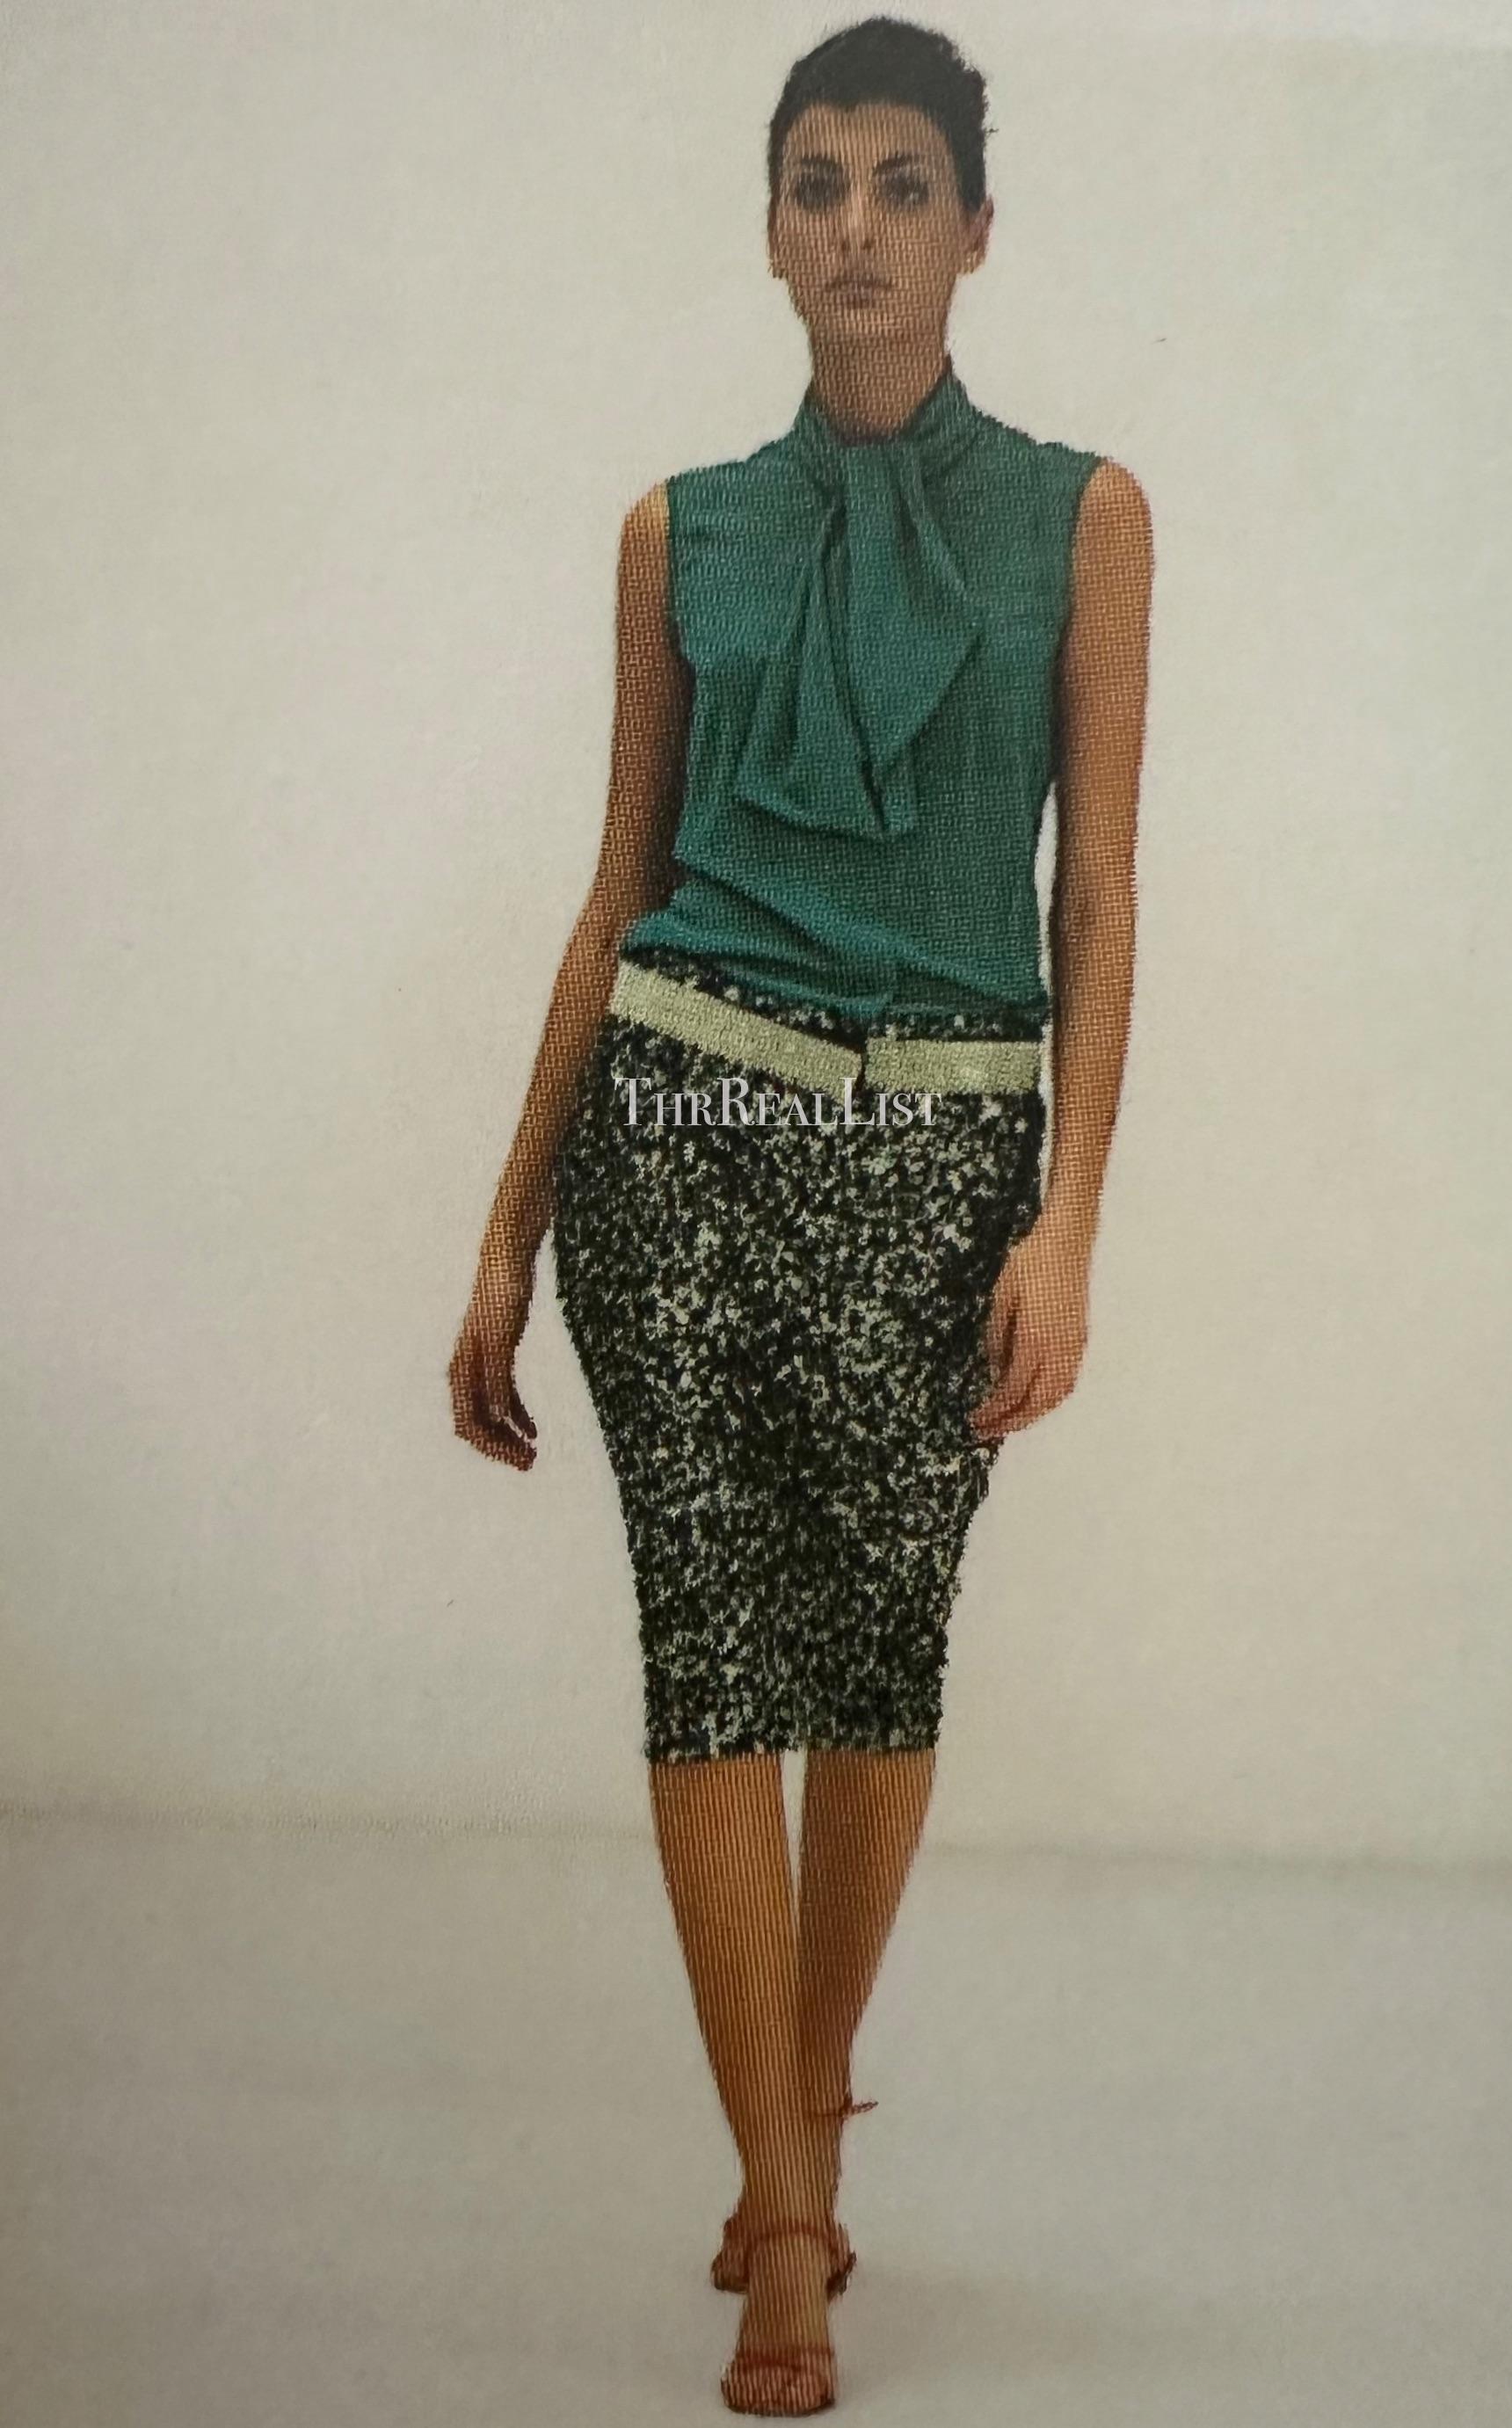 Dieser Gürtel von Dolce & Gabbana wurde im Herbst/Winter 2000 als Look Nummer 126 auf dem Laufsteg präsentiert. Dieser glitzernde Gürtel ist mit hellgrünen Swarovski-Strasssteinen besetzt und wird mit einem Klettverschluss geschlossen. 

Ungefähre